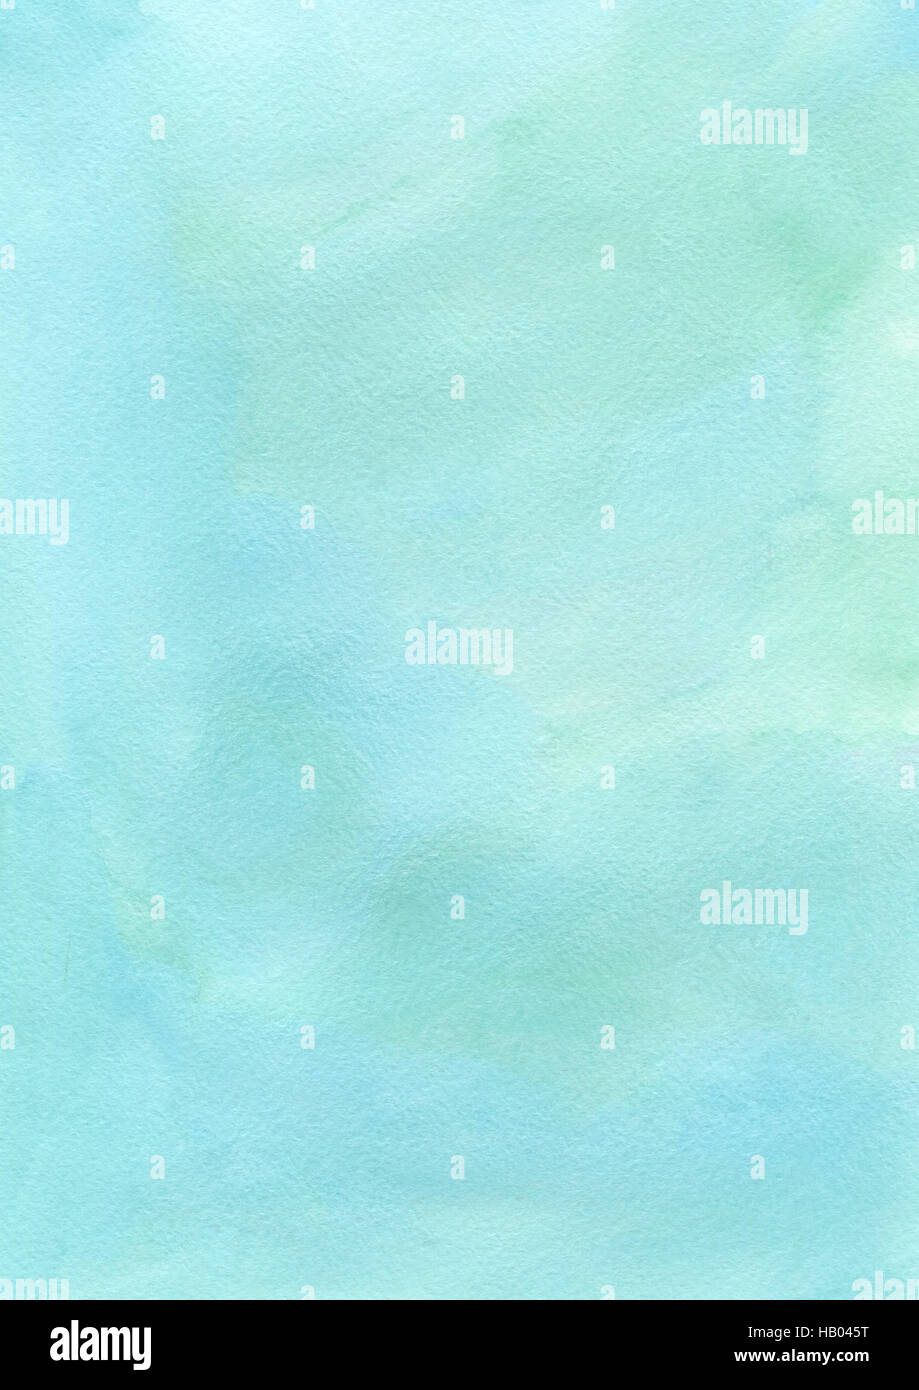 Inchiostro chiaro acquerello brushgreen texture di sfondo della carta Foto Stock